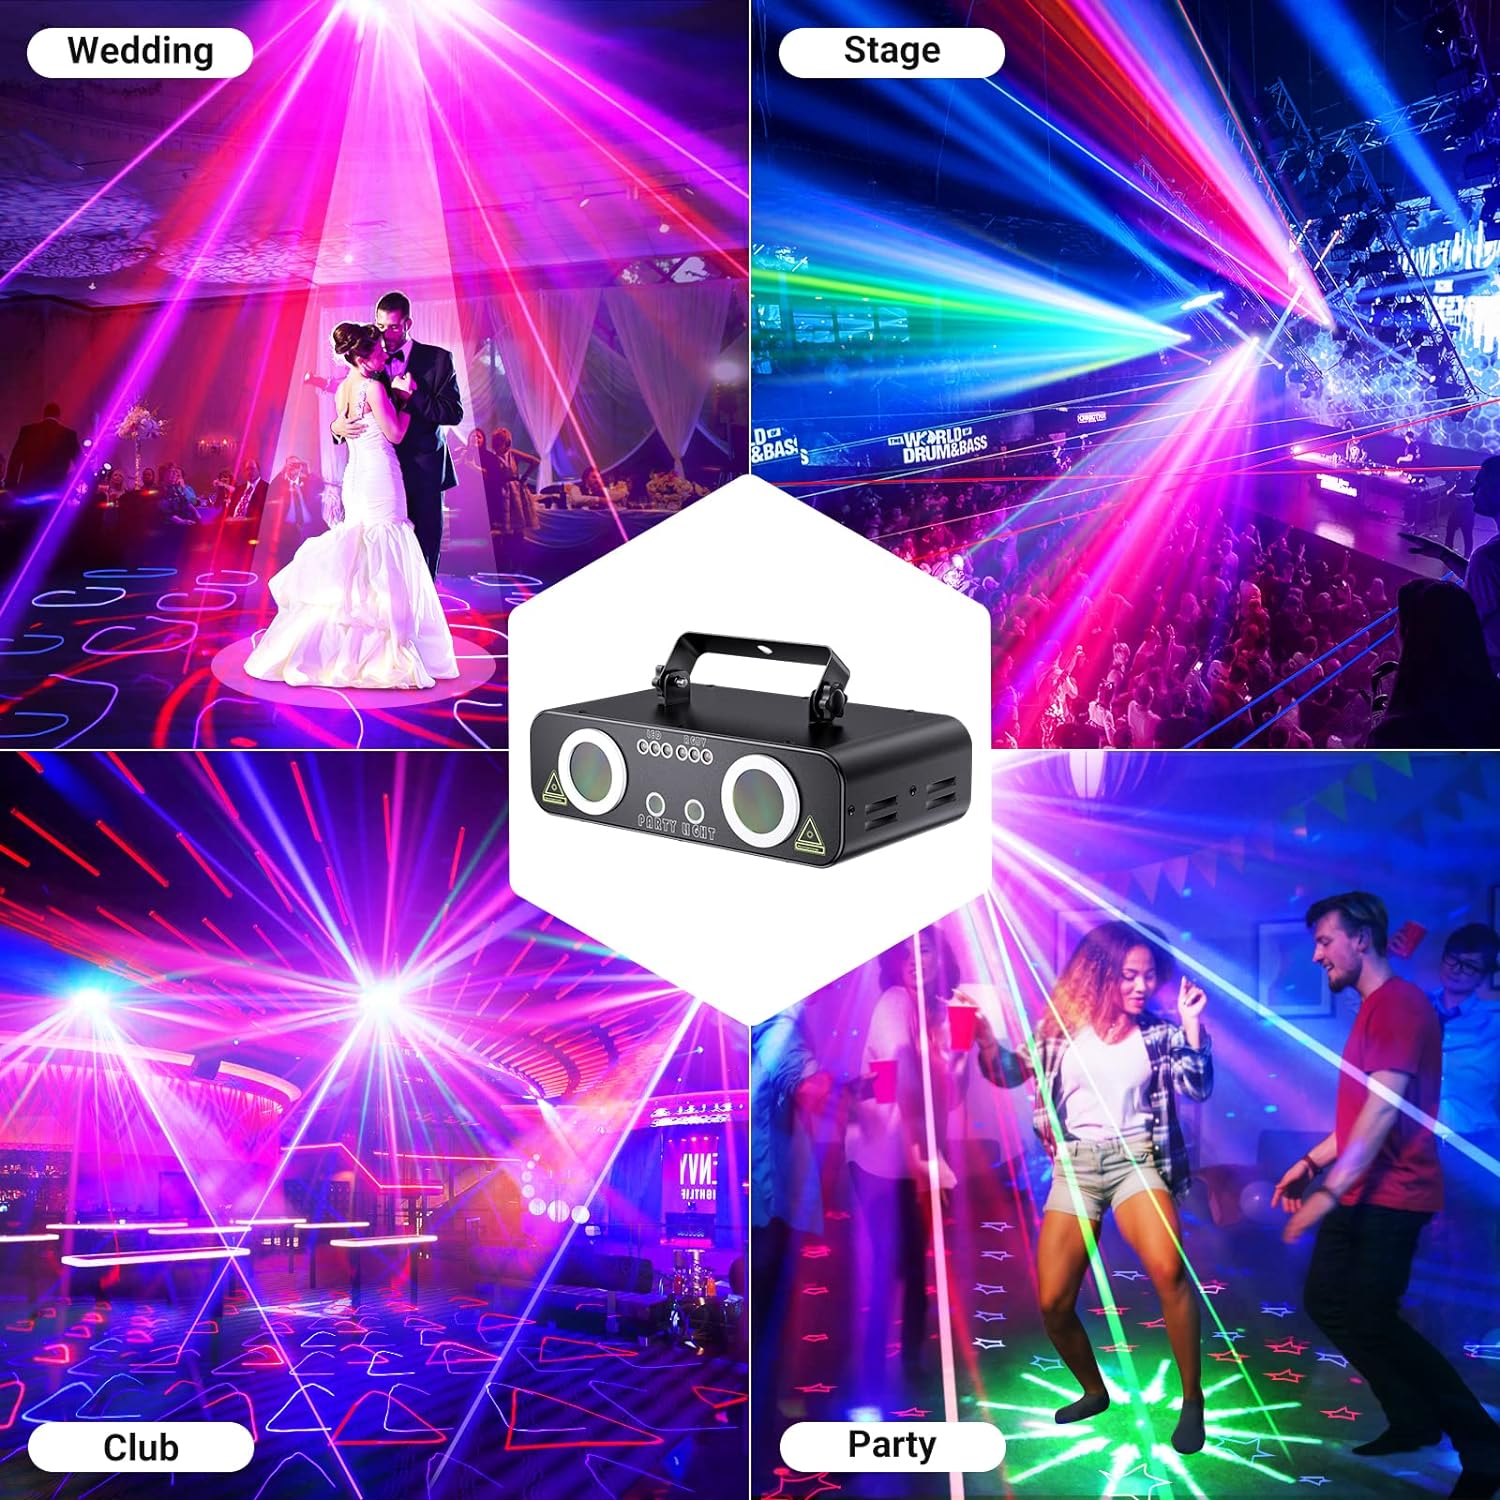 Ehaho L2800 3D DJ Laser Party Lights 5 in 1